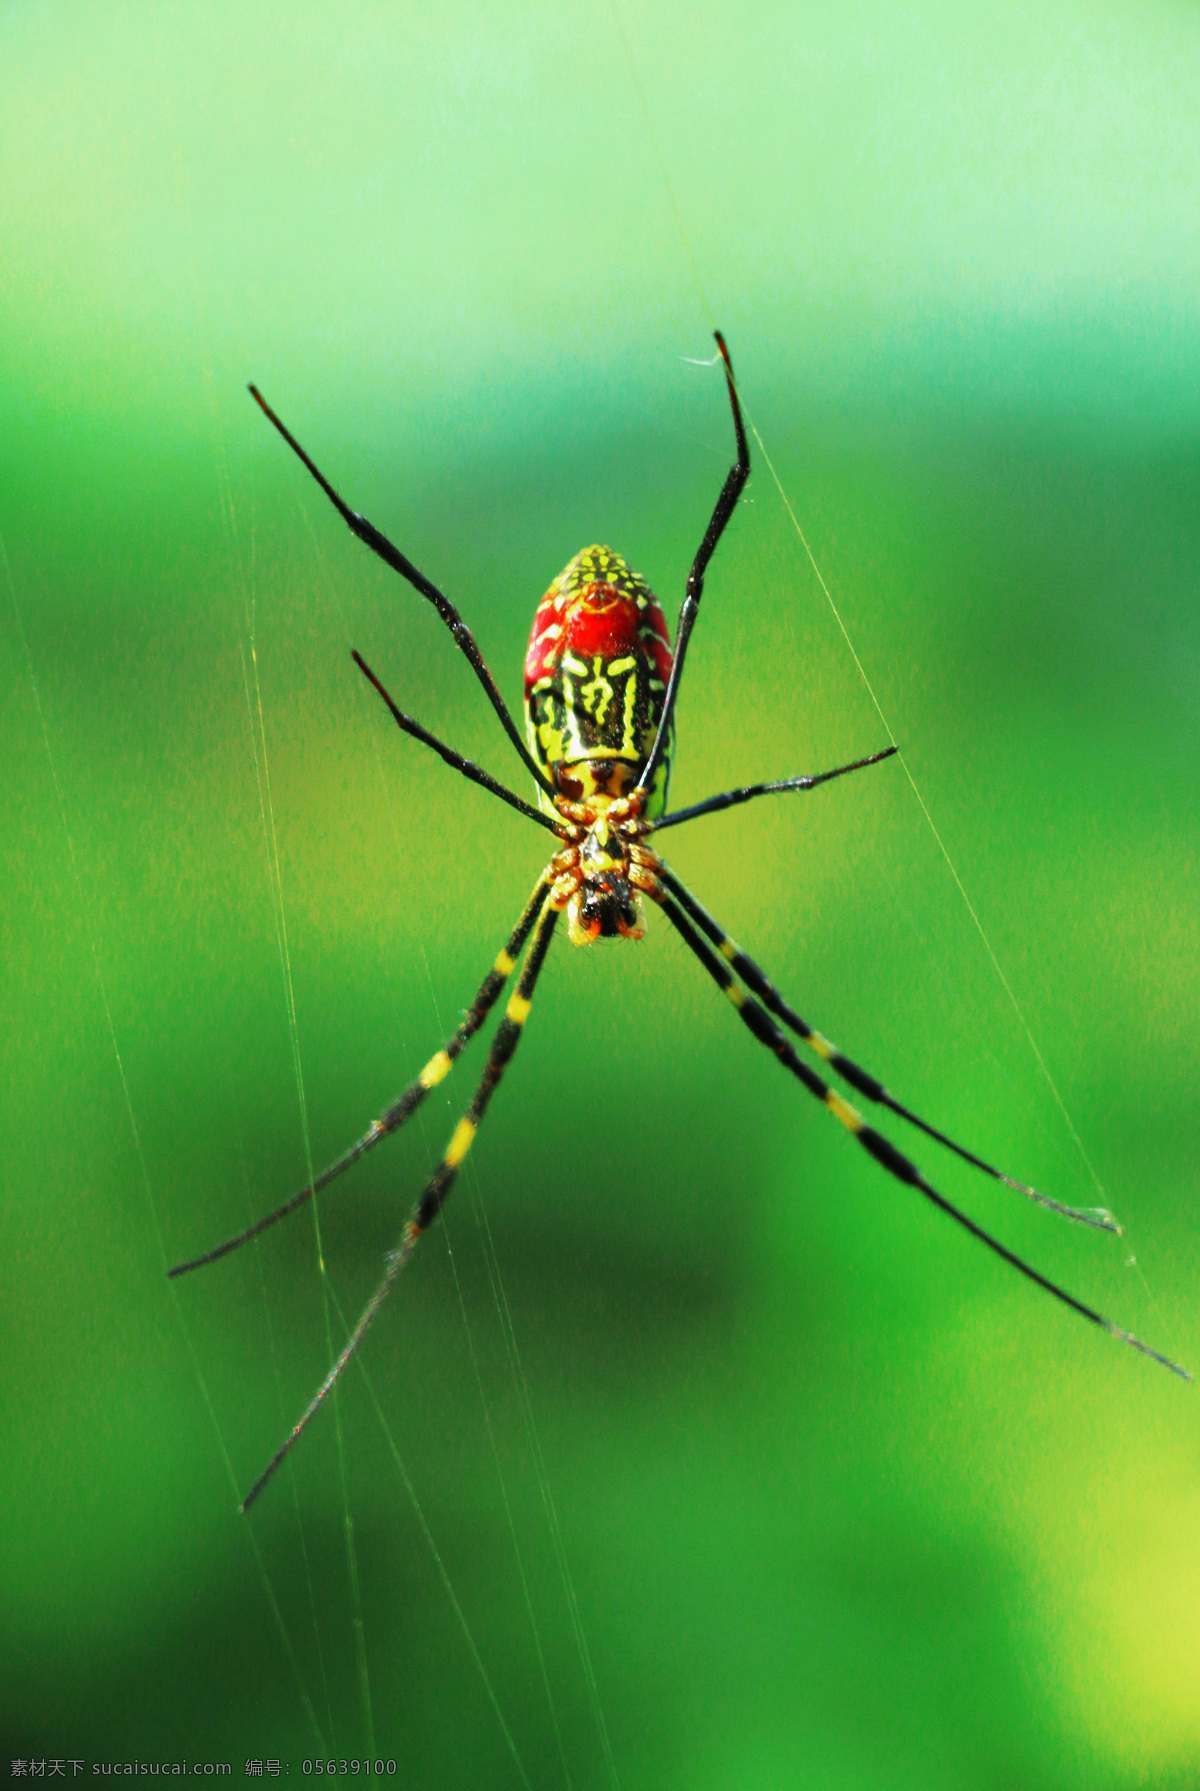 蜘蛛 昆虫 蜘蛛网 红蜘蛛 动物 害虫 生物世界 绿色